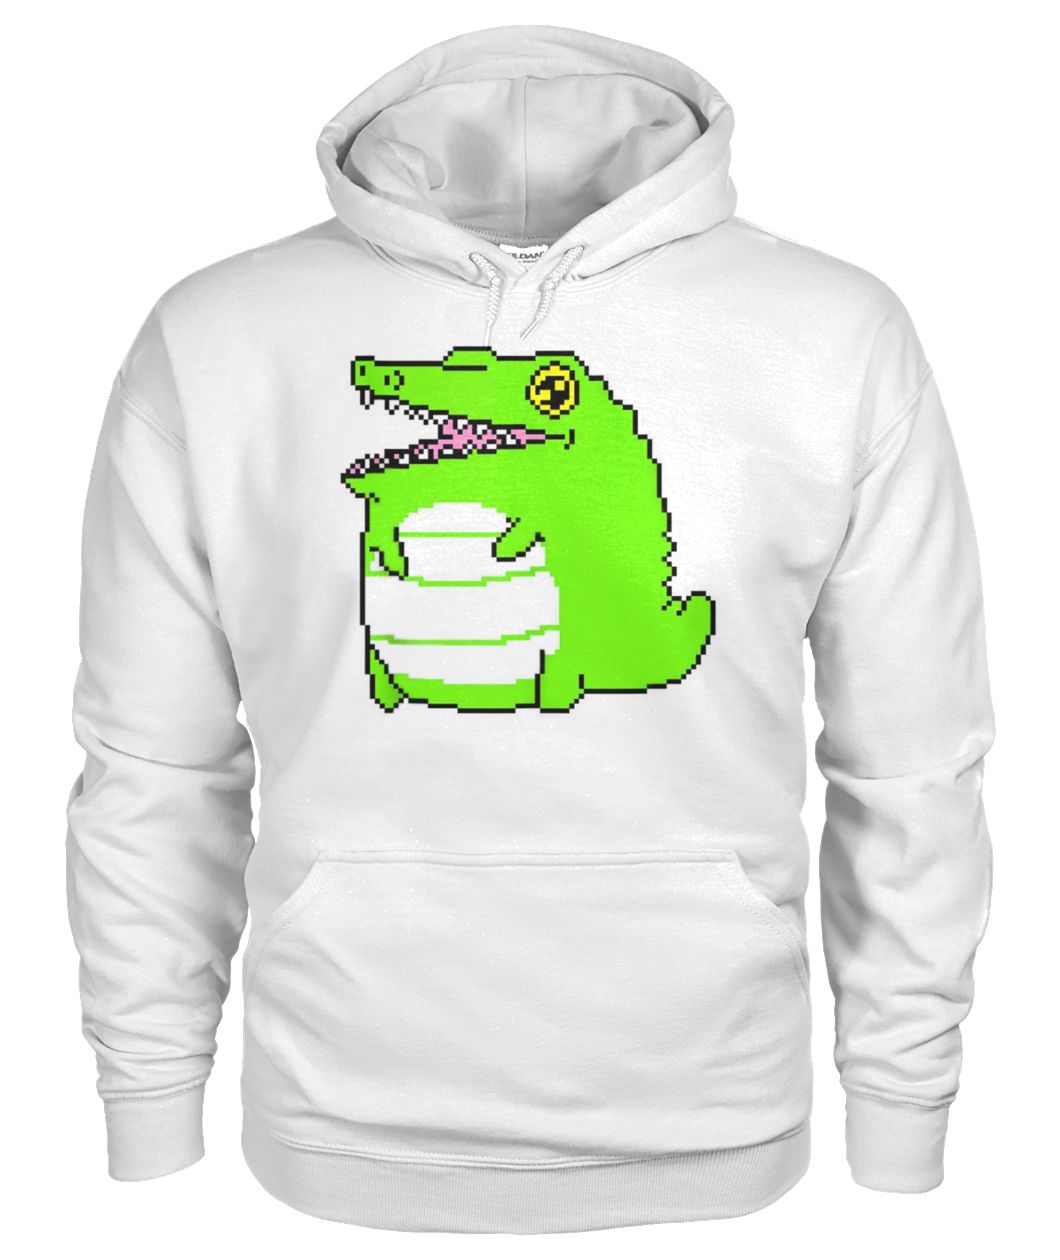 Green cartoon crocodile gildan hoodie